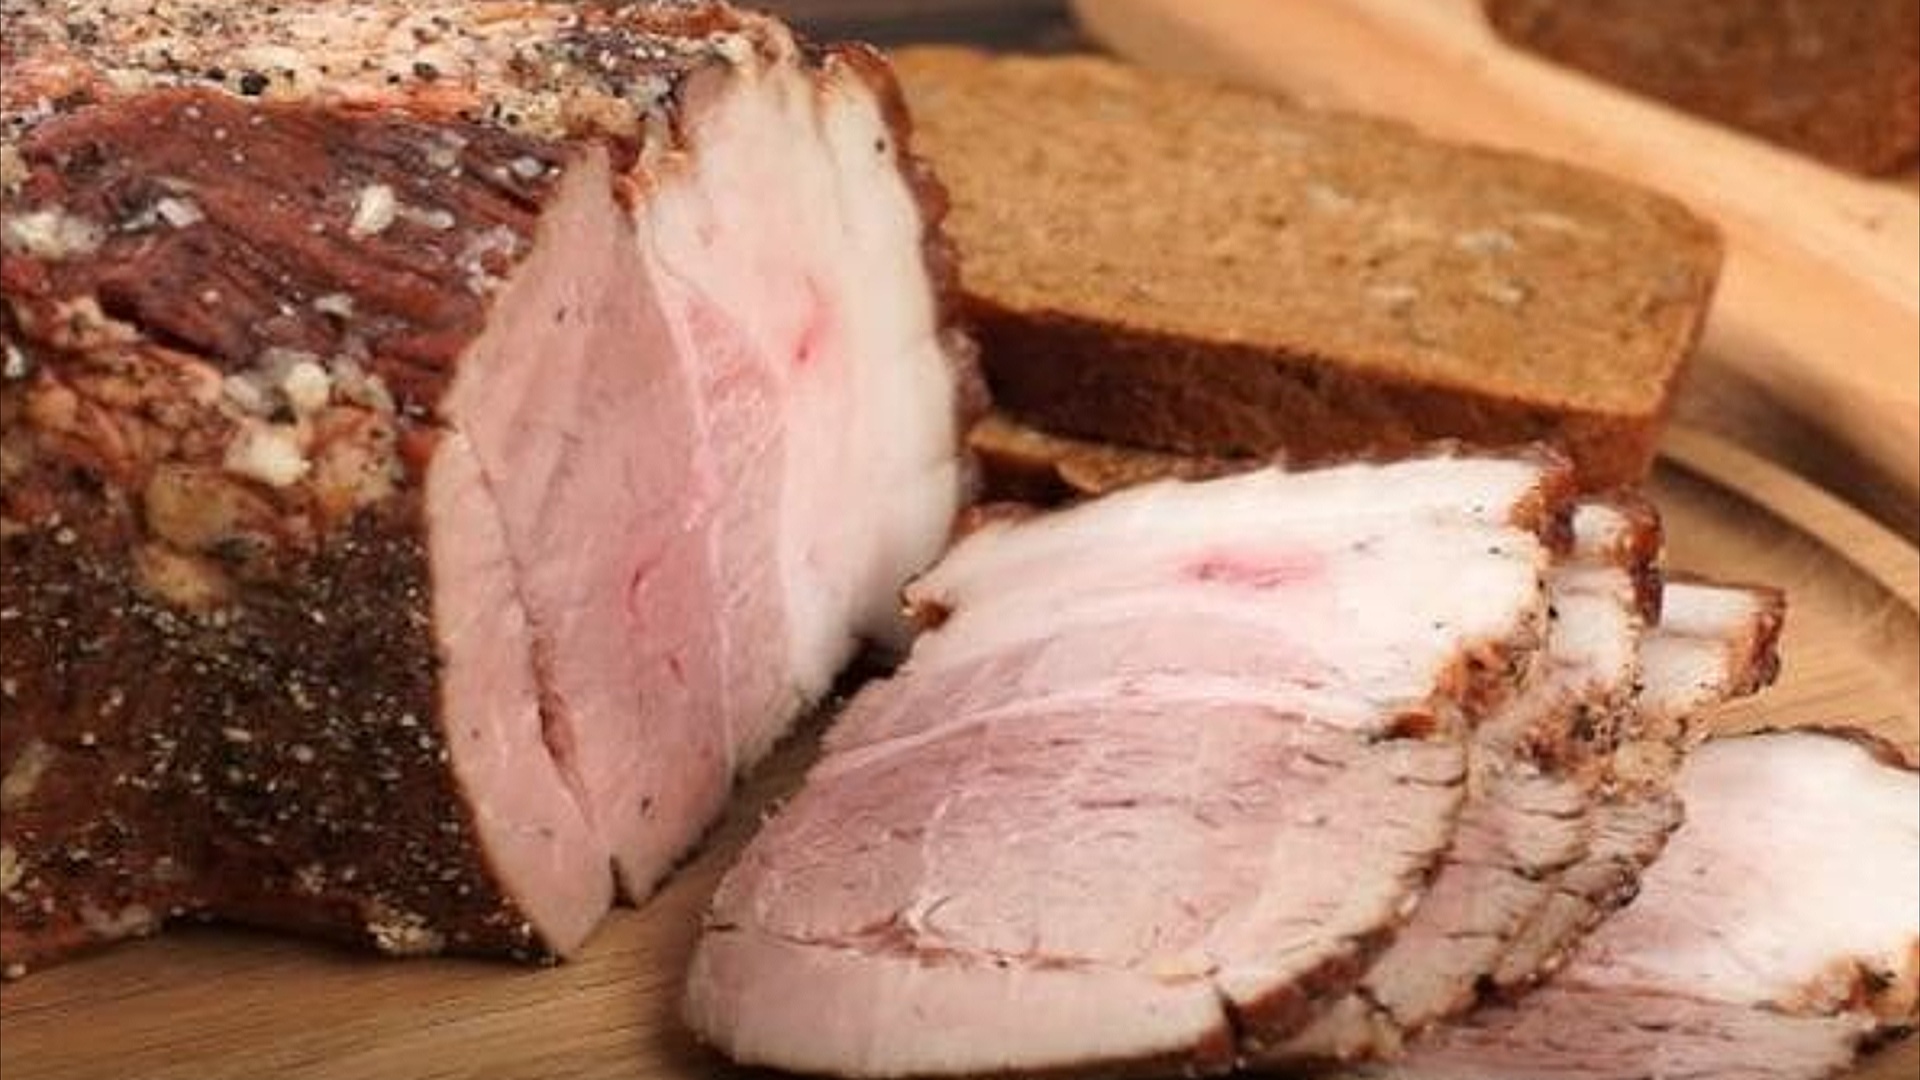 Рецепт грудинки свиной в луковой шелухе в домашних условиях приготовления с фото